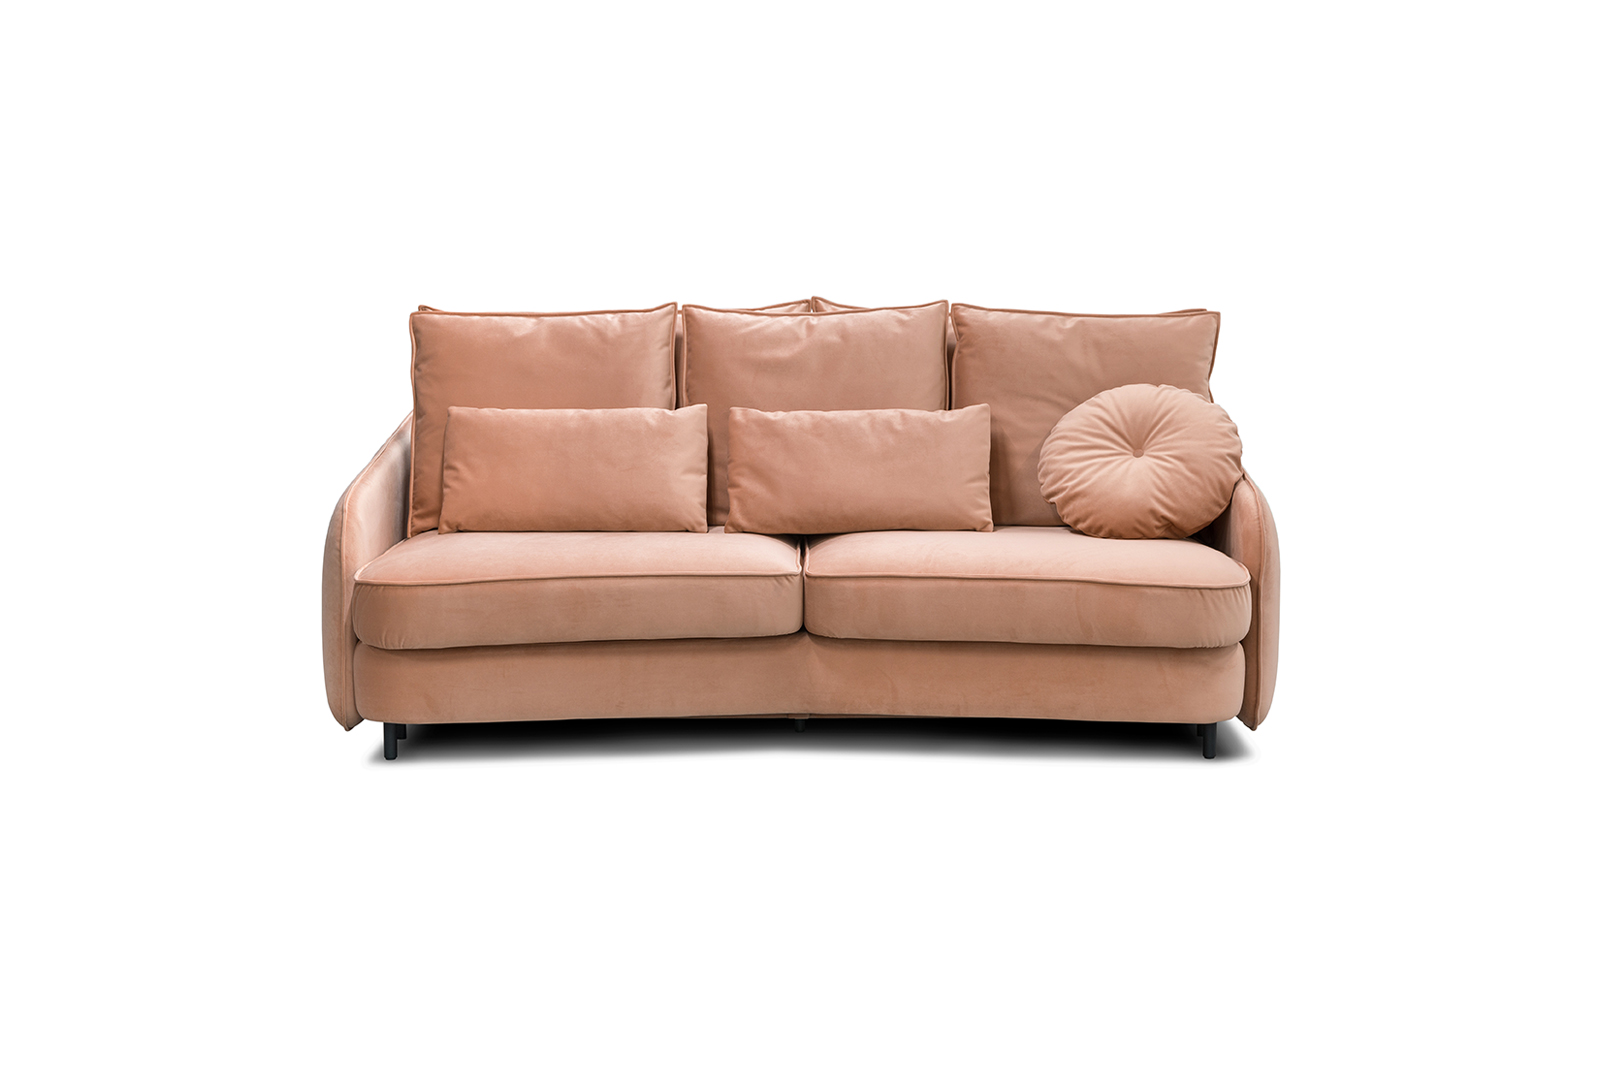 Massimo 3 seater sofa